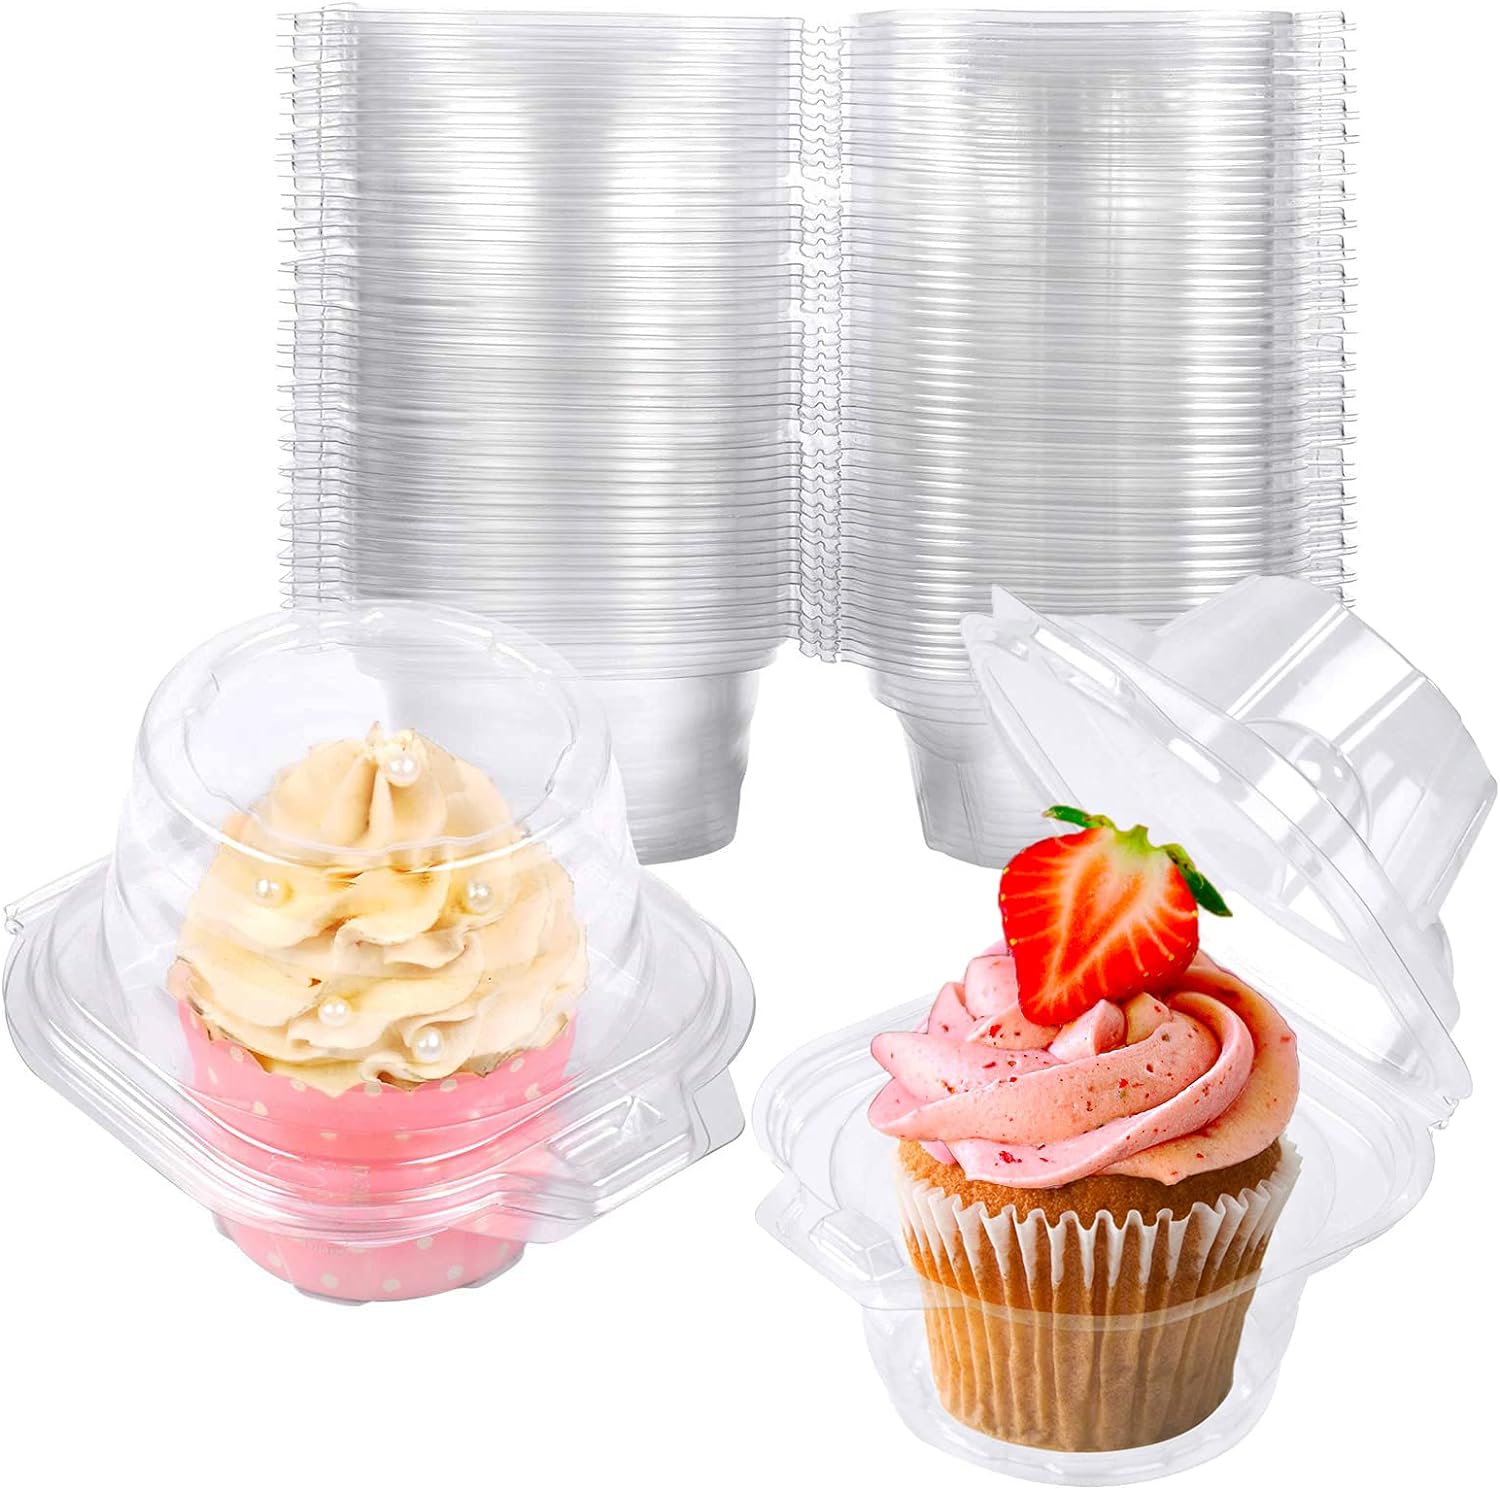 25個獨立紙杯蛋糕容器、塑料紙杯蛋糕盒、紙杯蛋糕架、可堆疊深圓頂紙杯蛋糕架